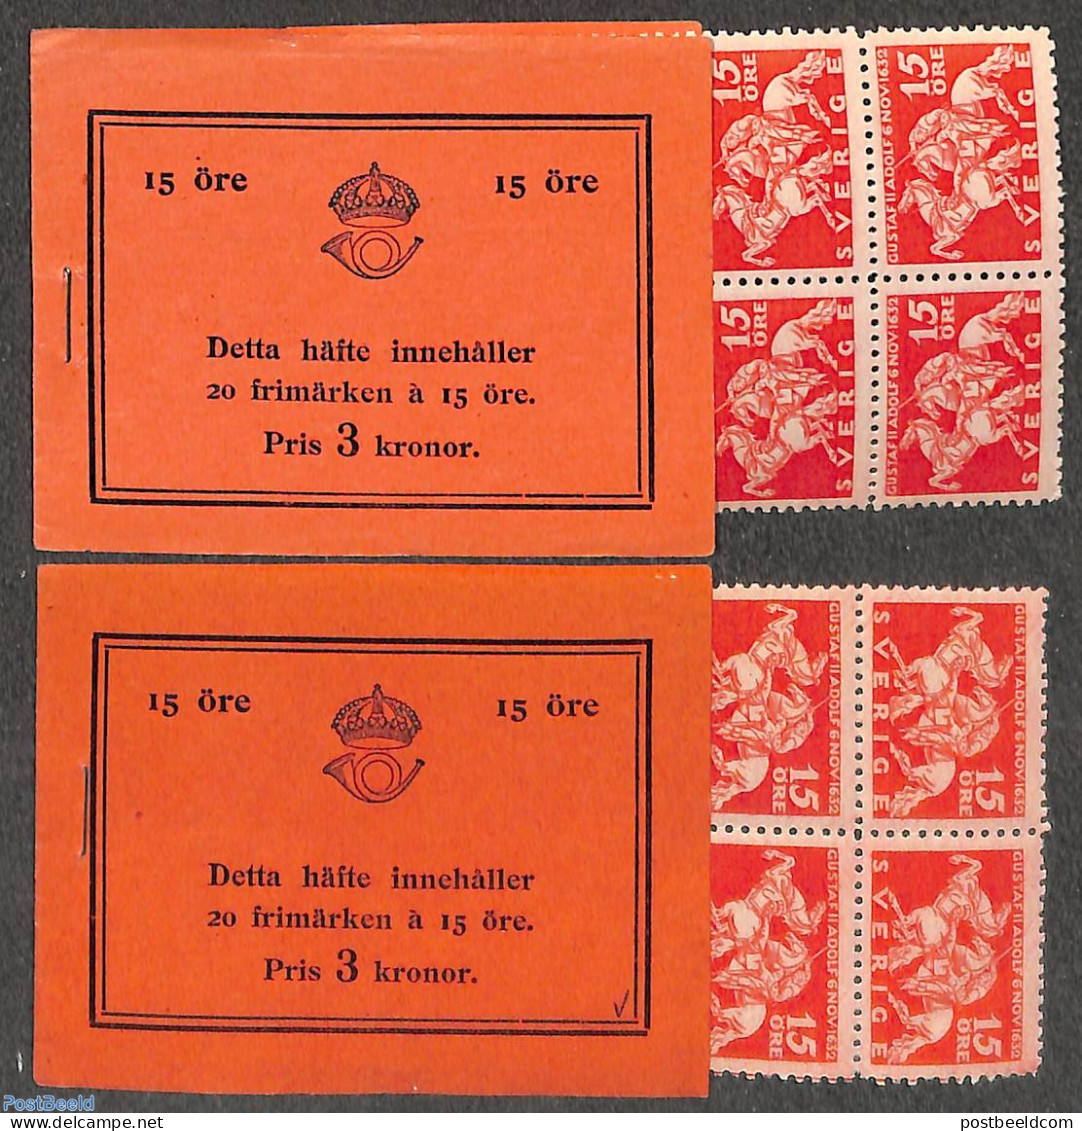 Sweden 1932 Death Of King Gustav II, 2 Booklets, Mint NH, Stamp Booklets - Unused Stamps